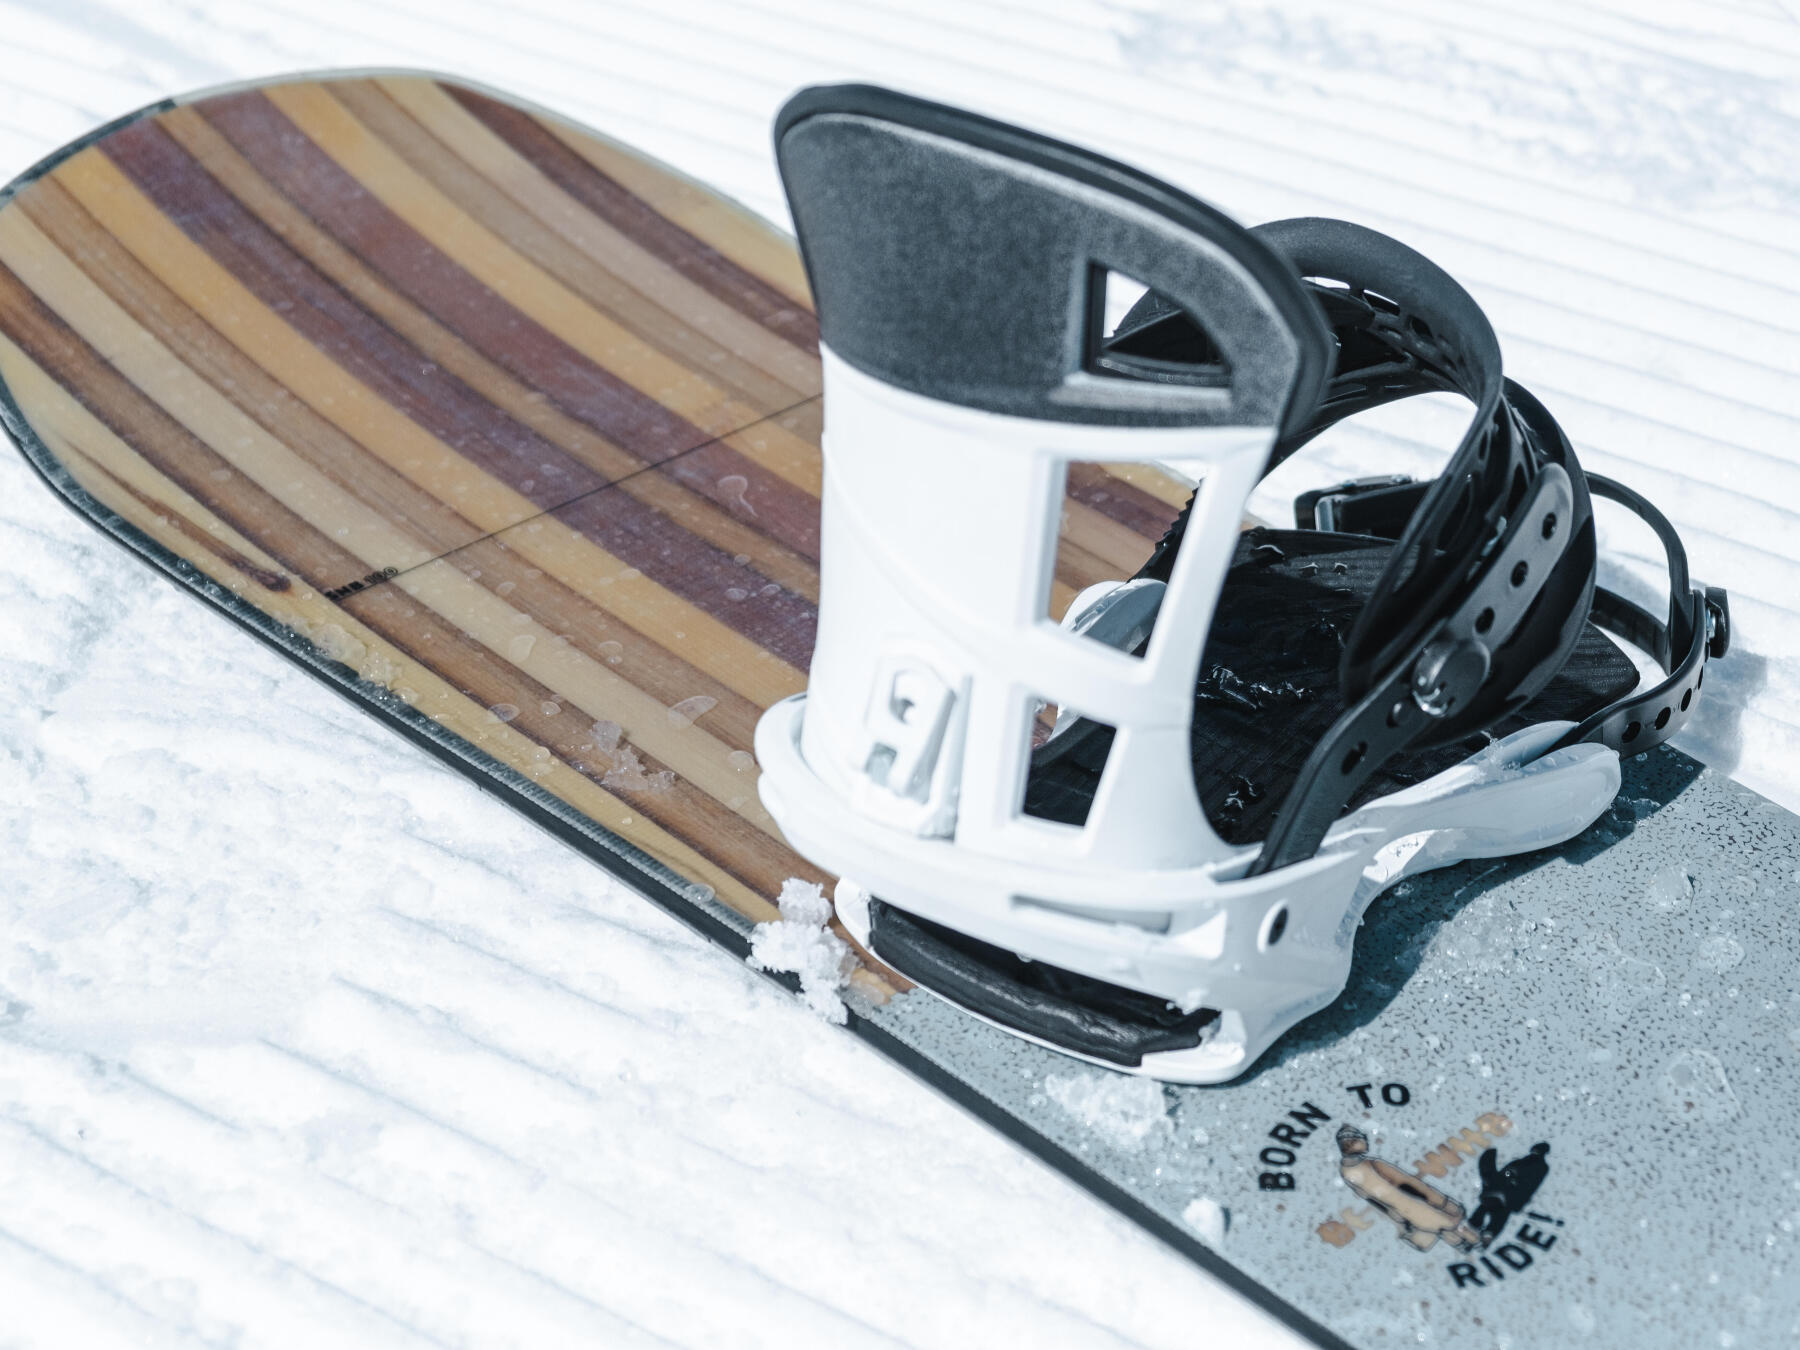 Comment faire un ollie en snowboard ?